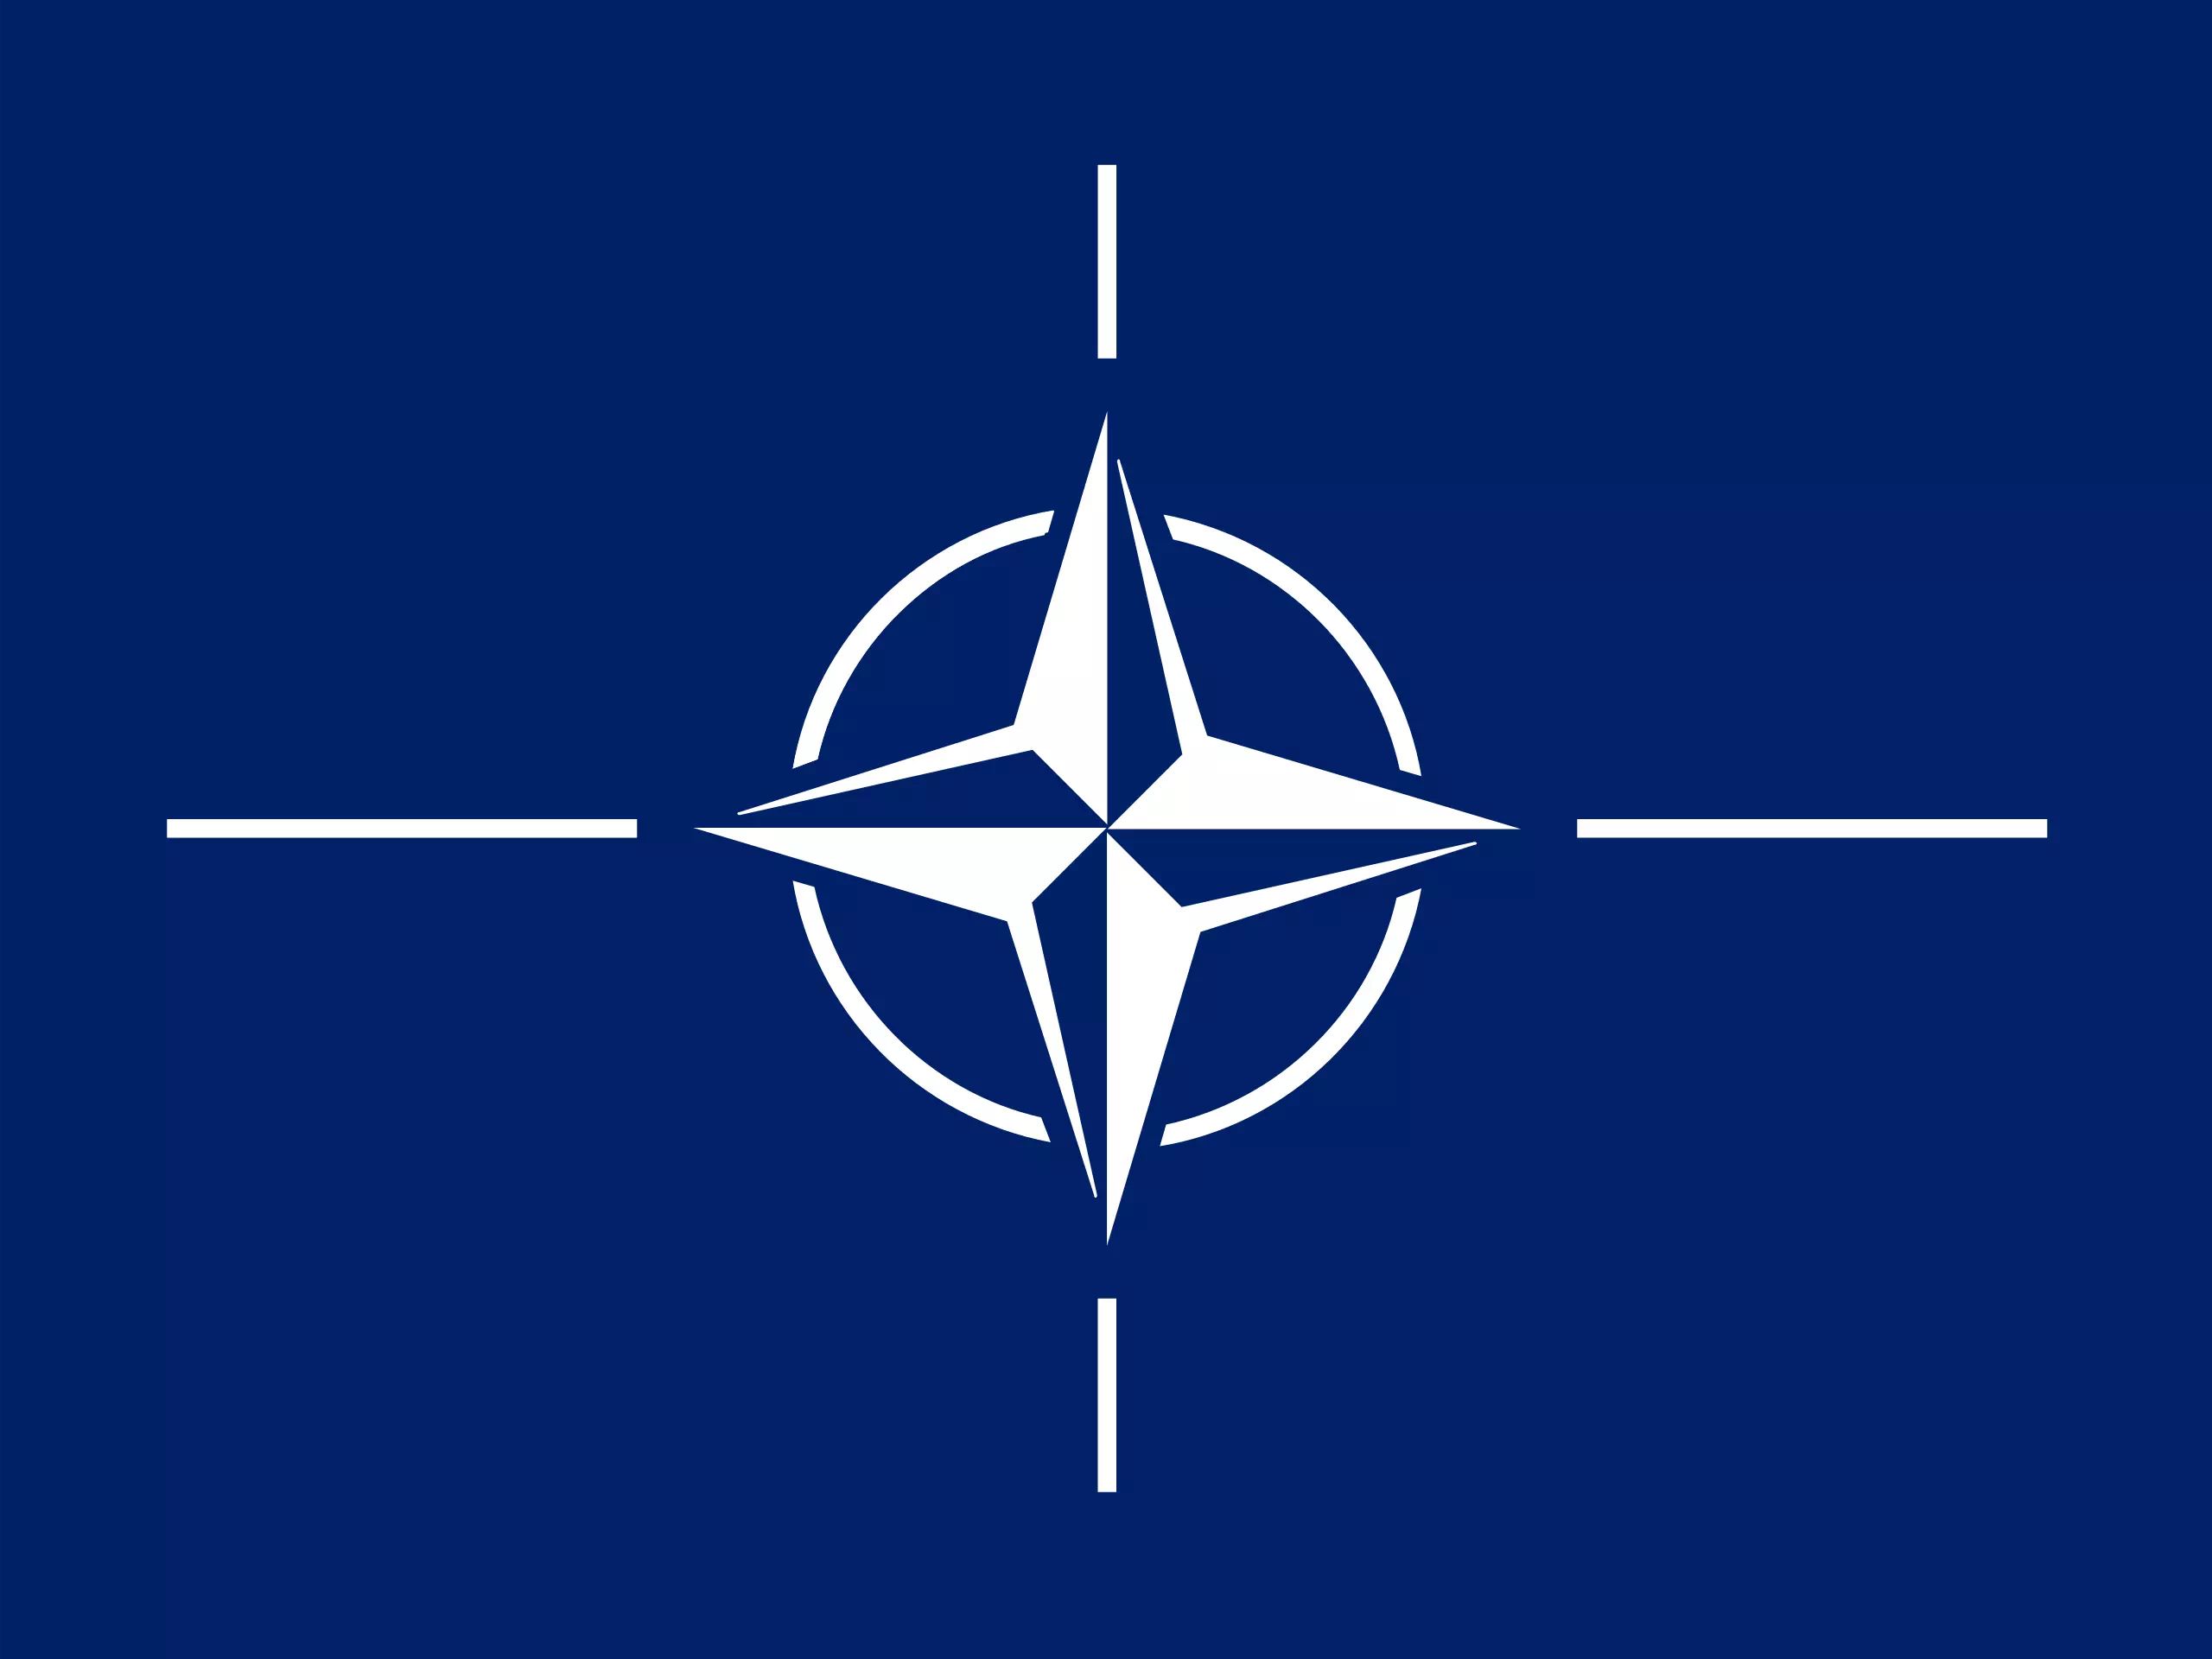 Üçüncü Dünya Savaşı’nın Ayak Sesleri ve NATO’nun Rolü (2)